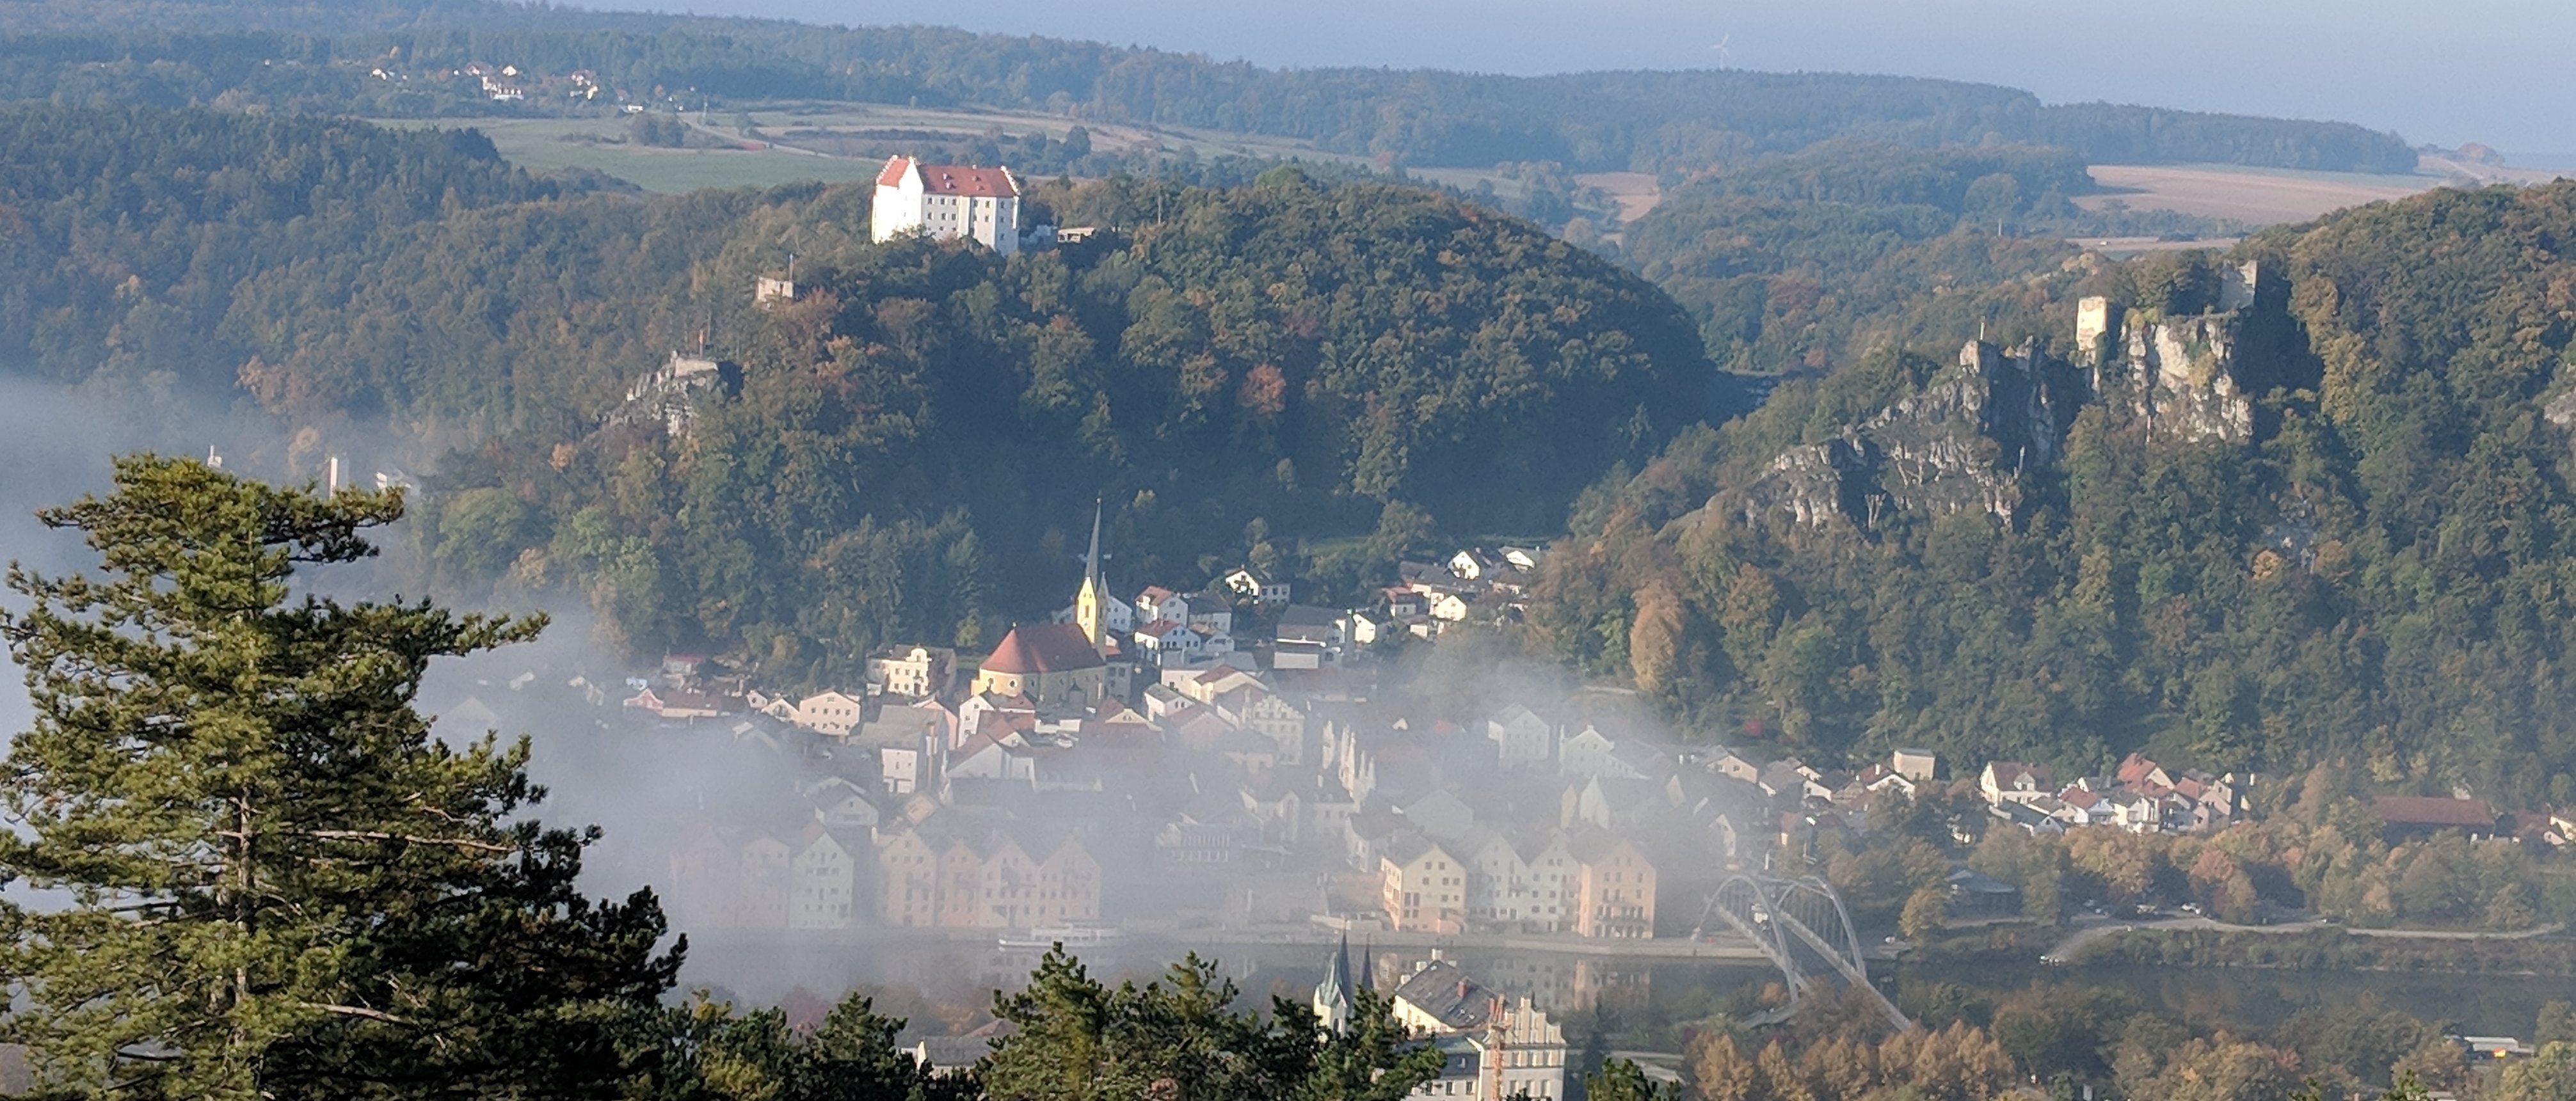 Riedenburg im Nebel